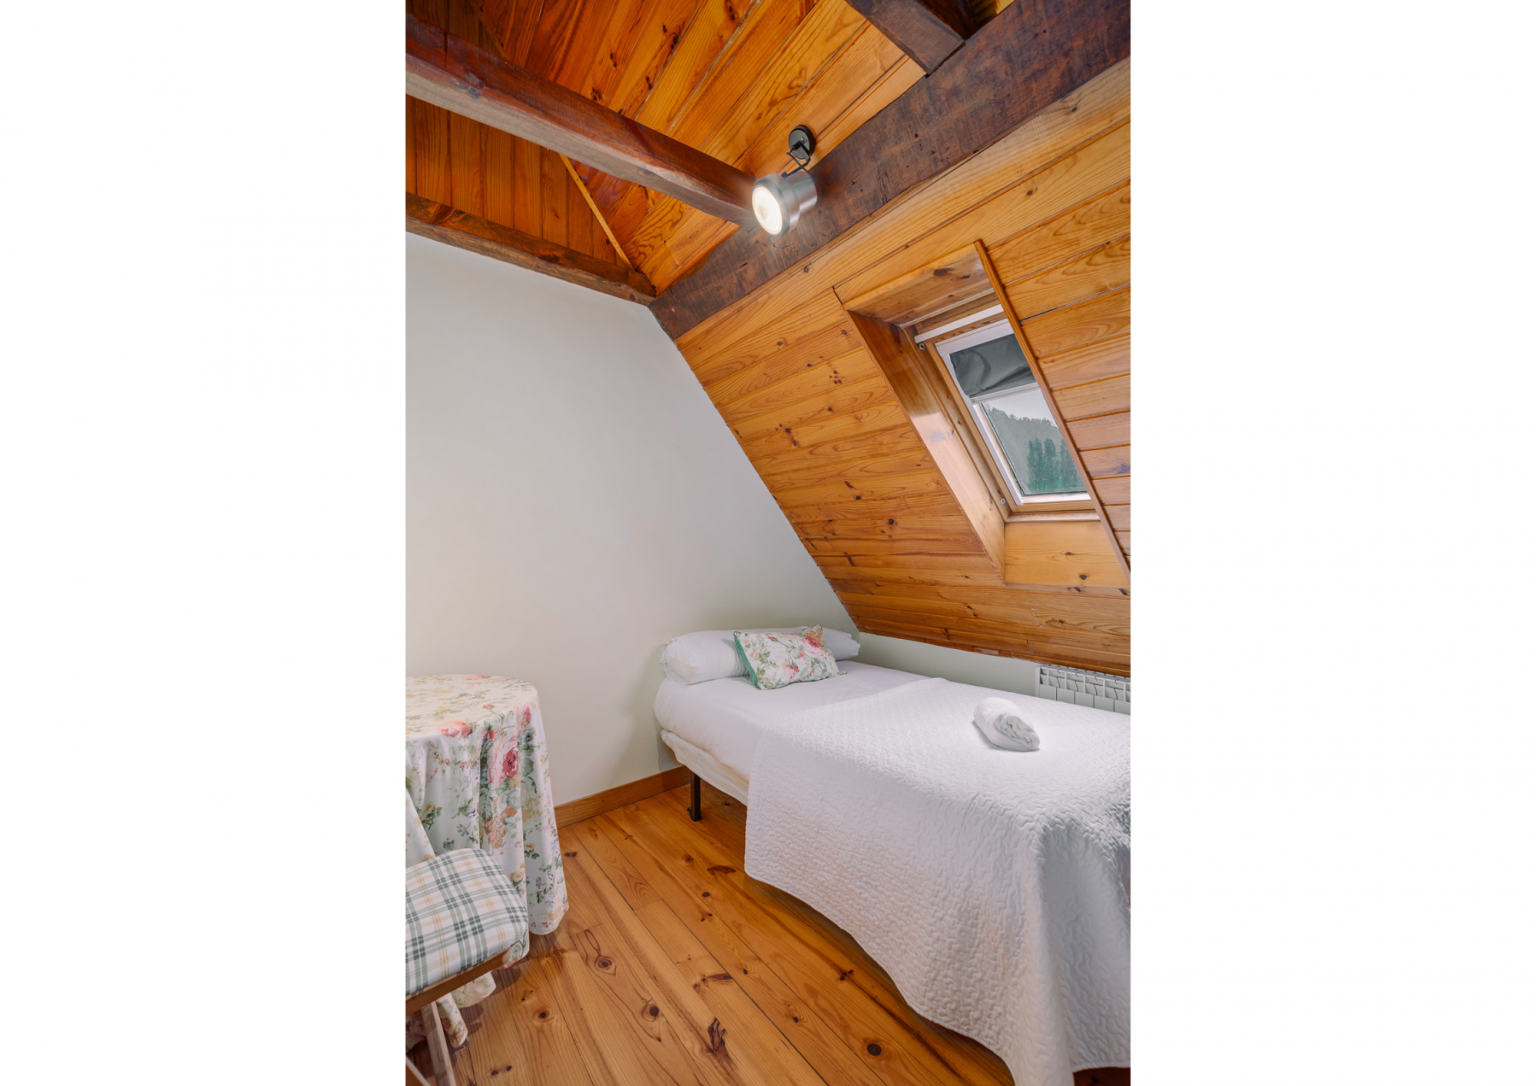 Dormitorio para 1 persona en el alojamiento Arix en Sallent de Gállego